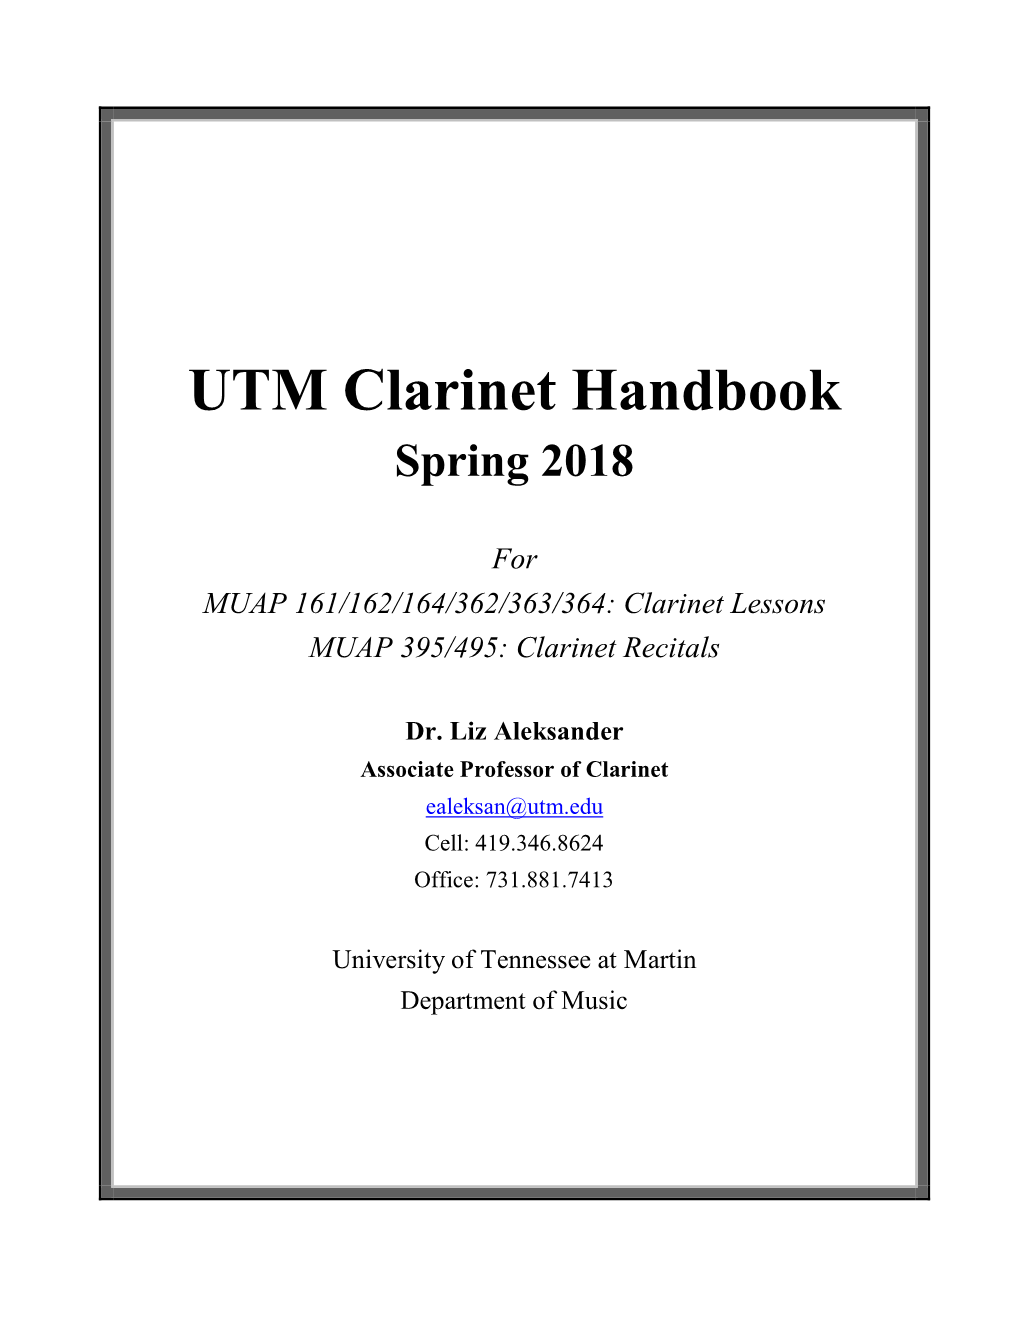 UTM Clarinet Handbook Spring 2018